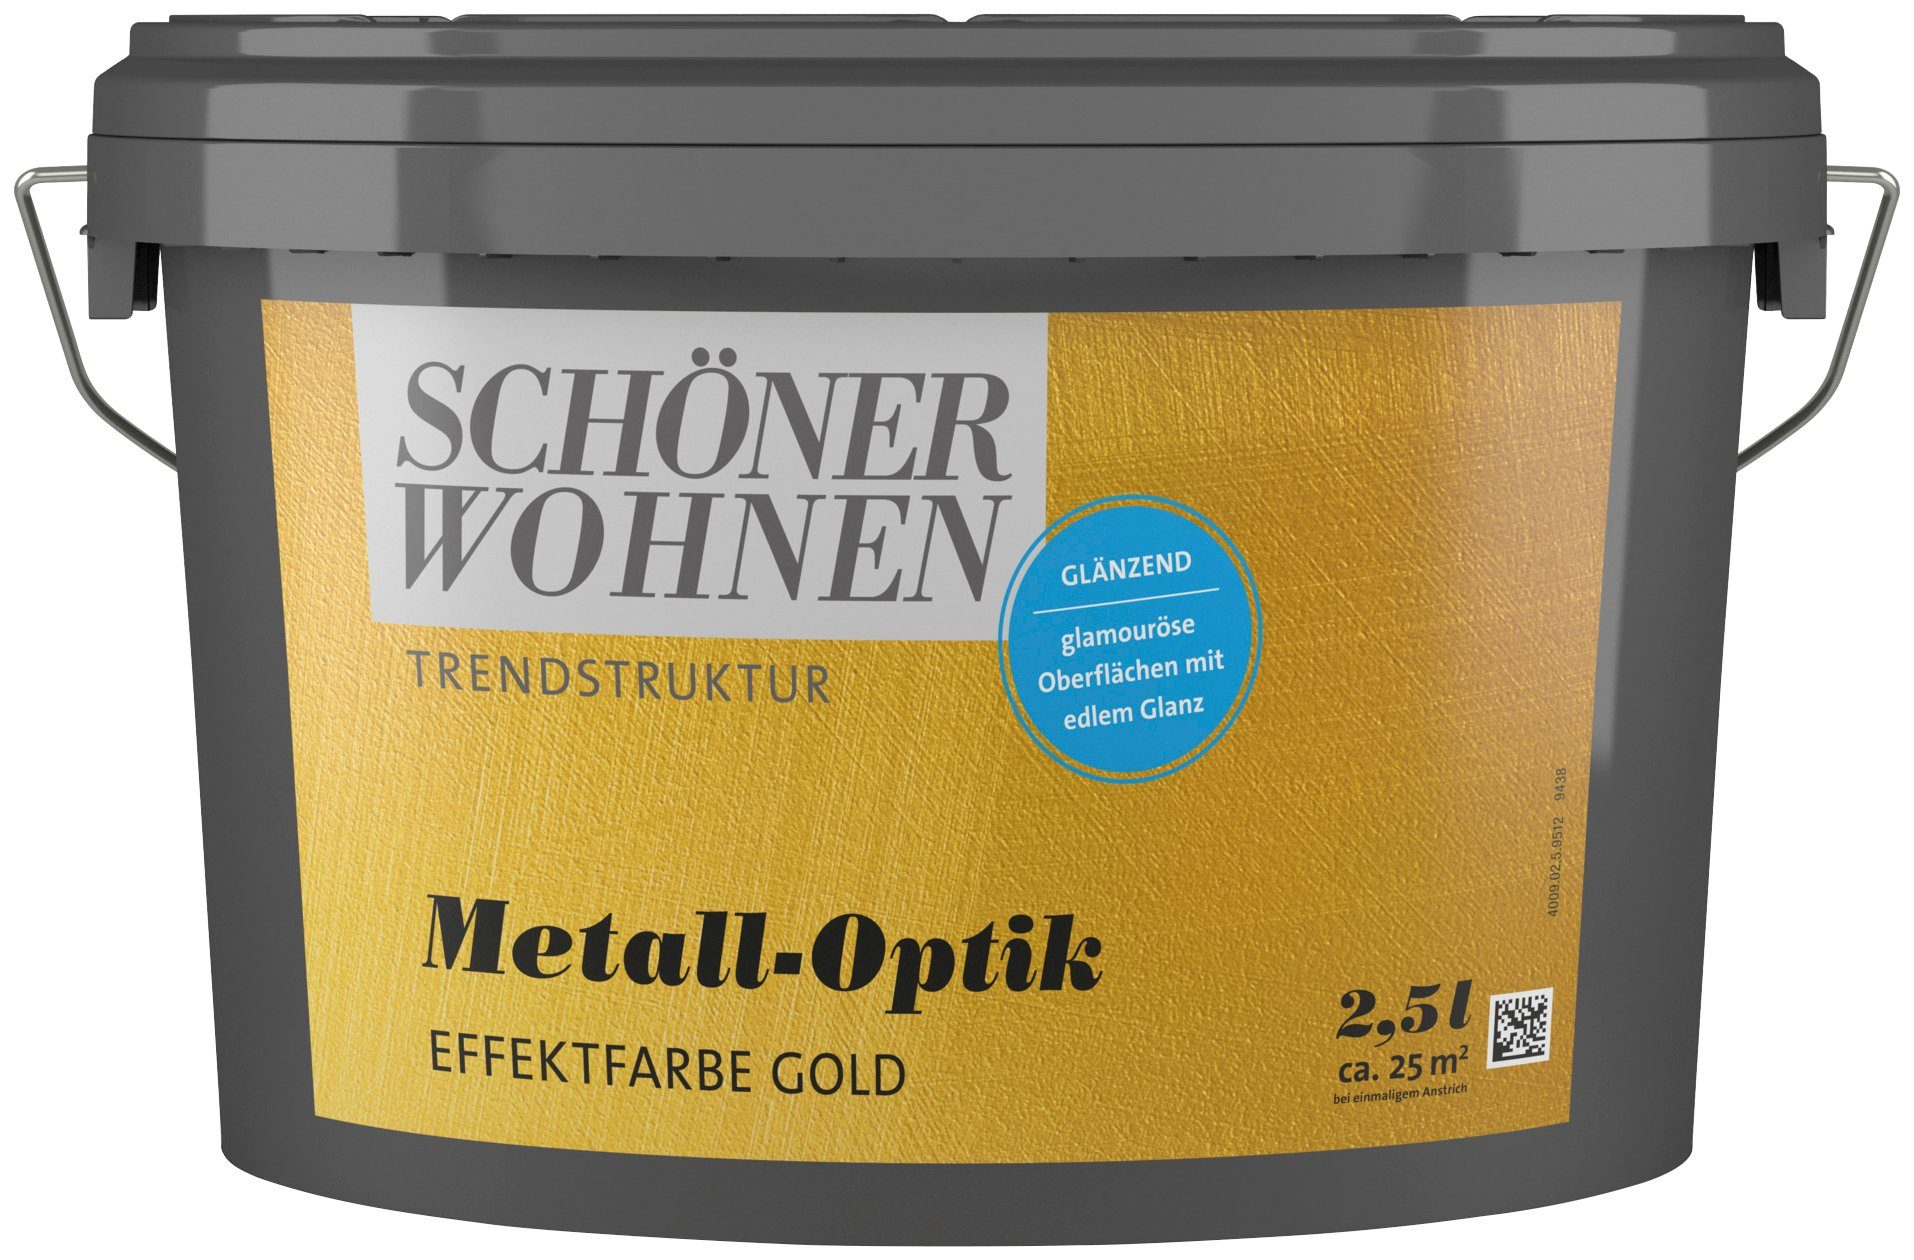 SCHÖNER WOHNEN FARBE Wandfarbe Metall-Optik metallischen Liter, für gold glänzende Look TRENDSTRUKTUR Effektfarbe, Effektfarbe 1